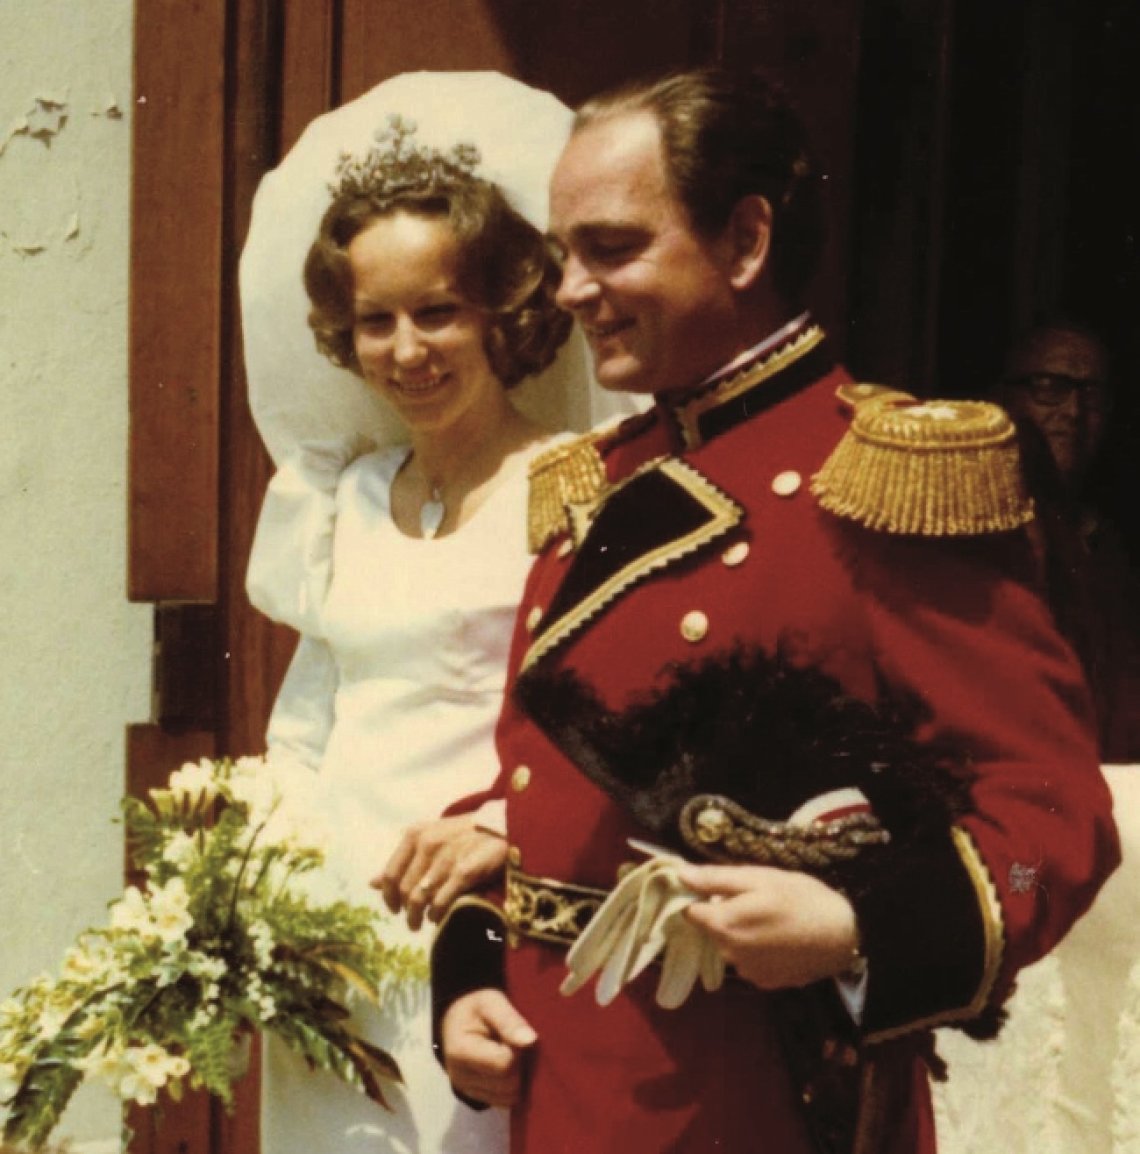 Wedding of Princess Marie Louise & Count Rudi von Schönburg, 1971